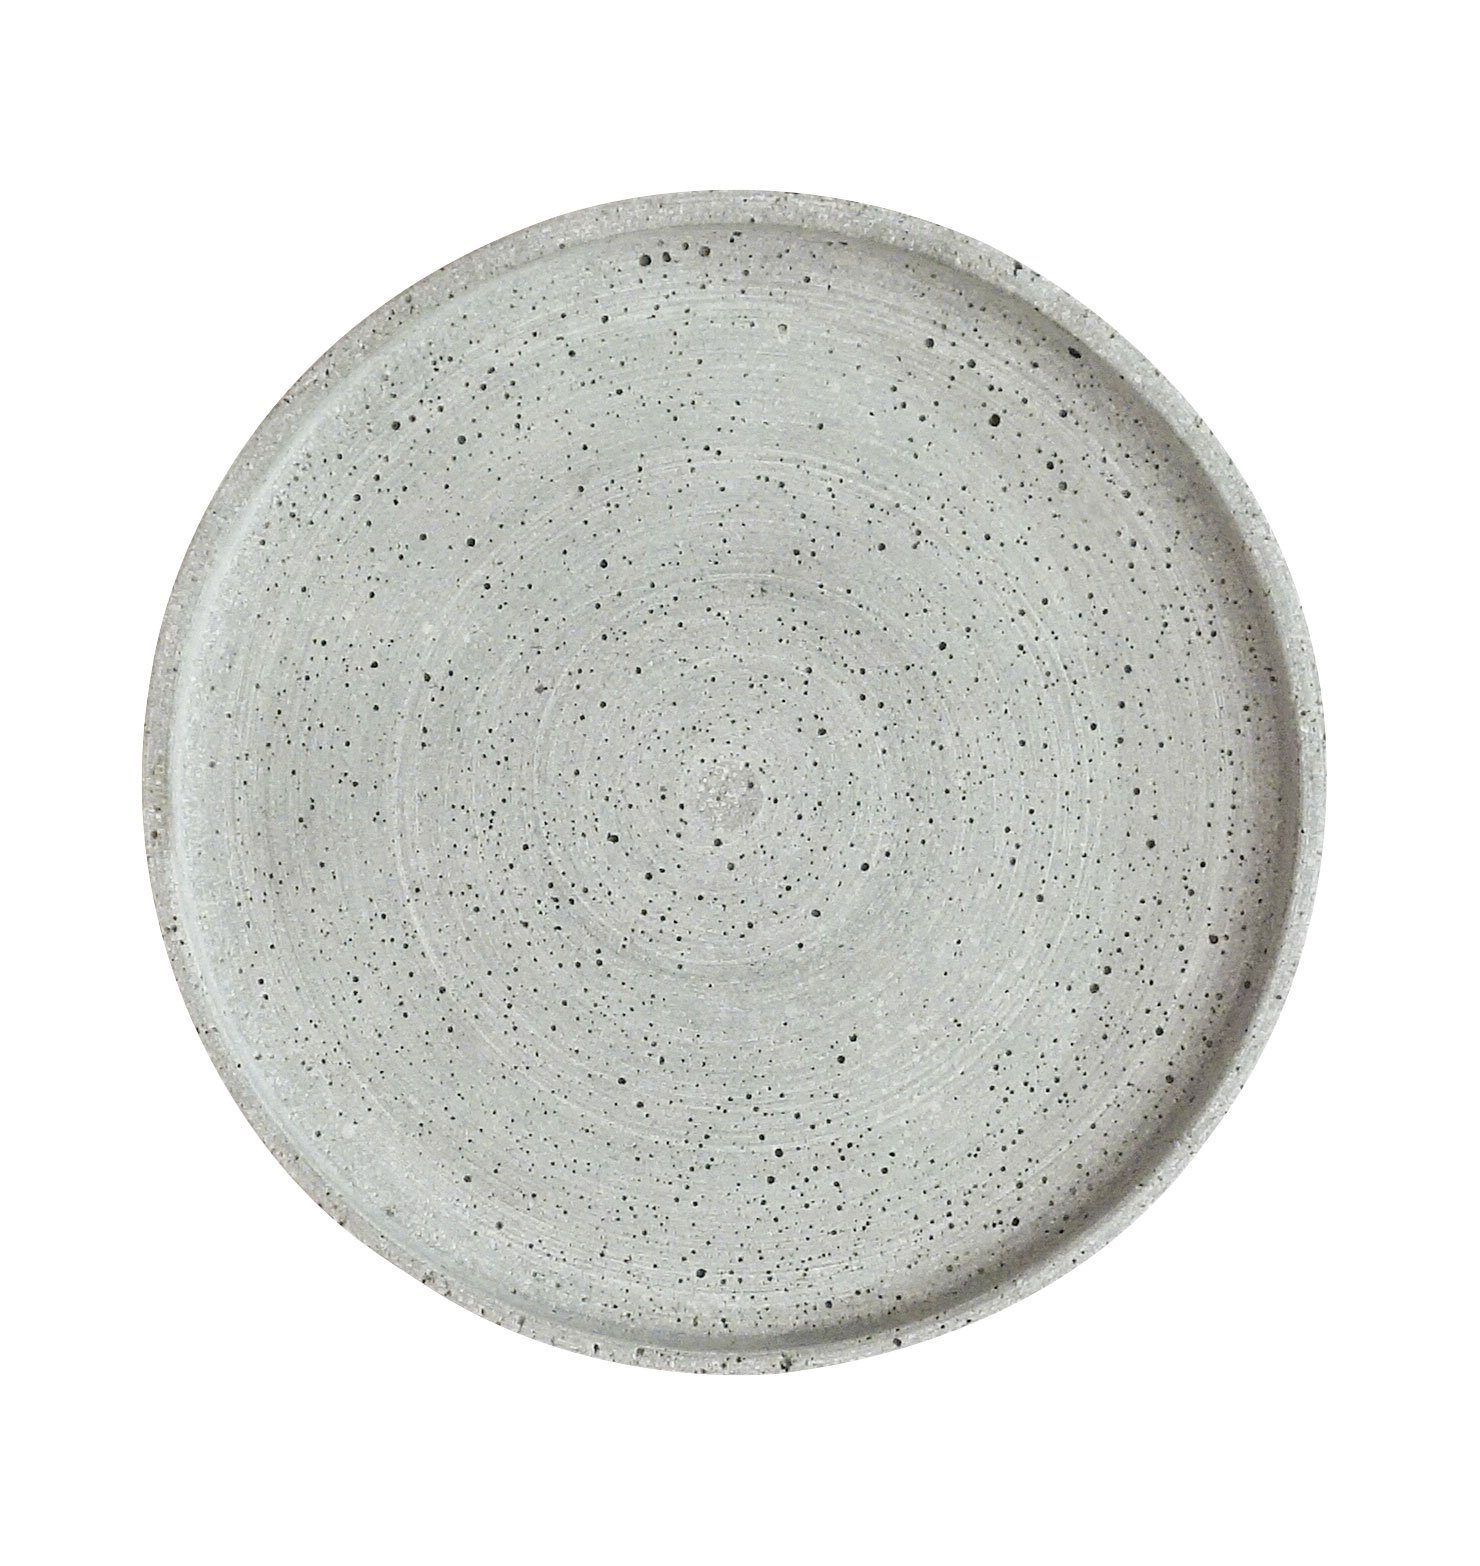 Engels Kerzen Kerzentablett benny kerzenteller stonecast grau Ø25 x 1,8 cm | Kerzentabletts